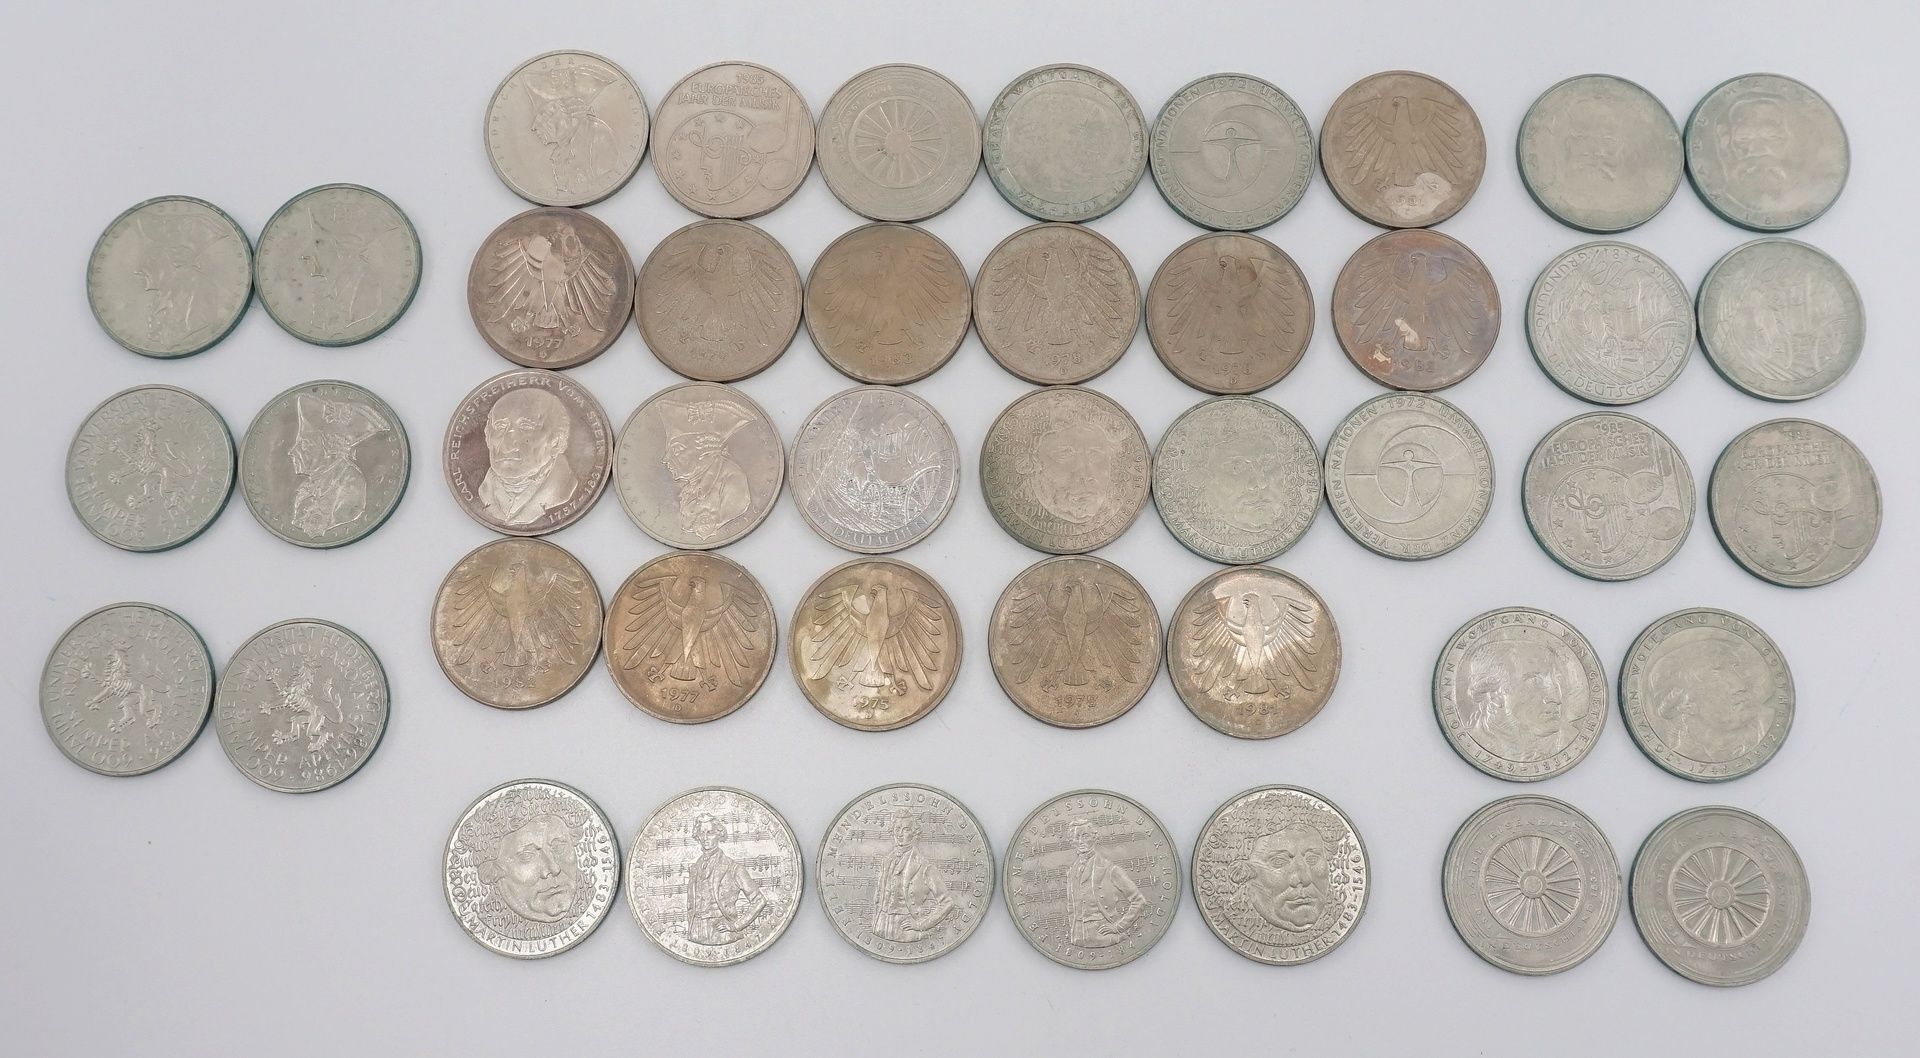 44 Münzen, 5 DM BRDKupfer / Nickel, verschiedene Ausgaben, Erhaltungszustand sehr schön bis